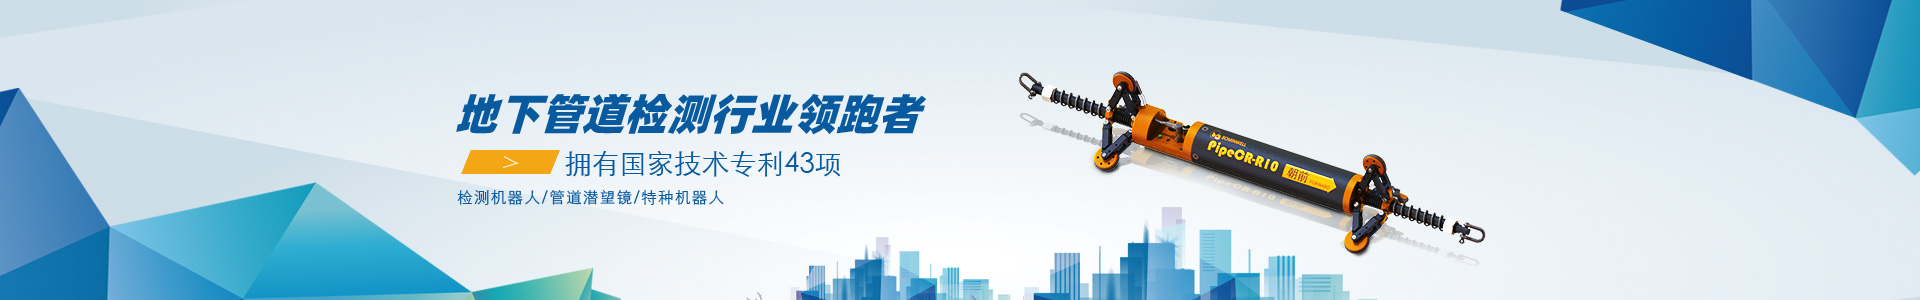 2021年中国工业机器人行业现状分析国产工业机器人发展空间巨大